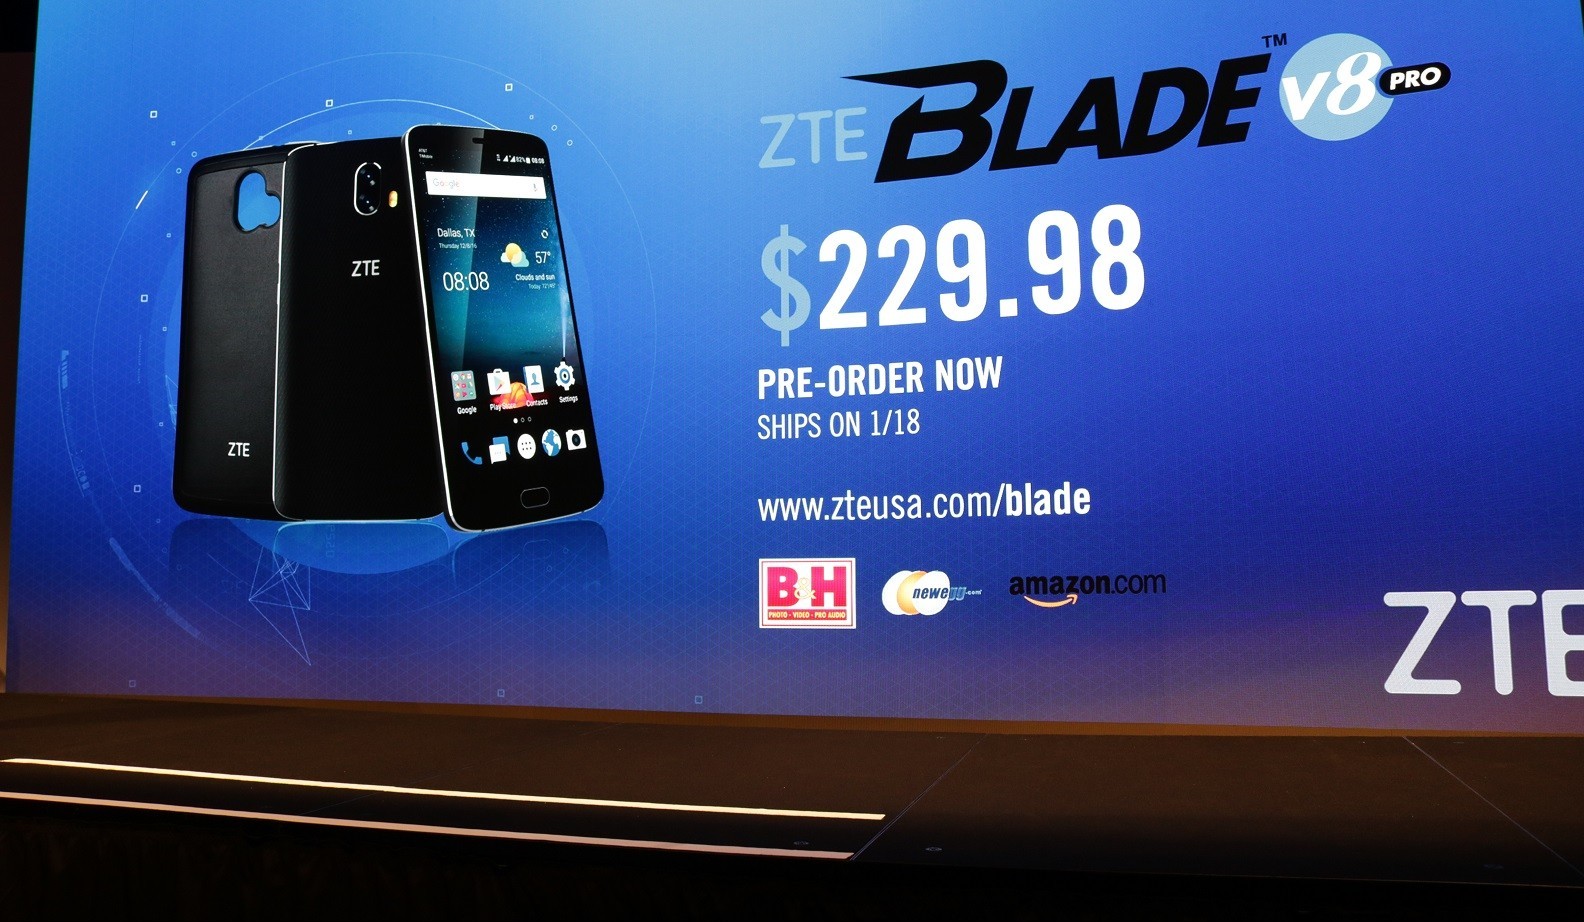 Trên tay ZTE Blade V8 Pro phân khúc tầm trung trang bị camera kép